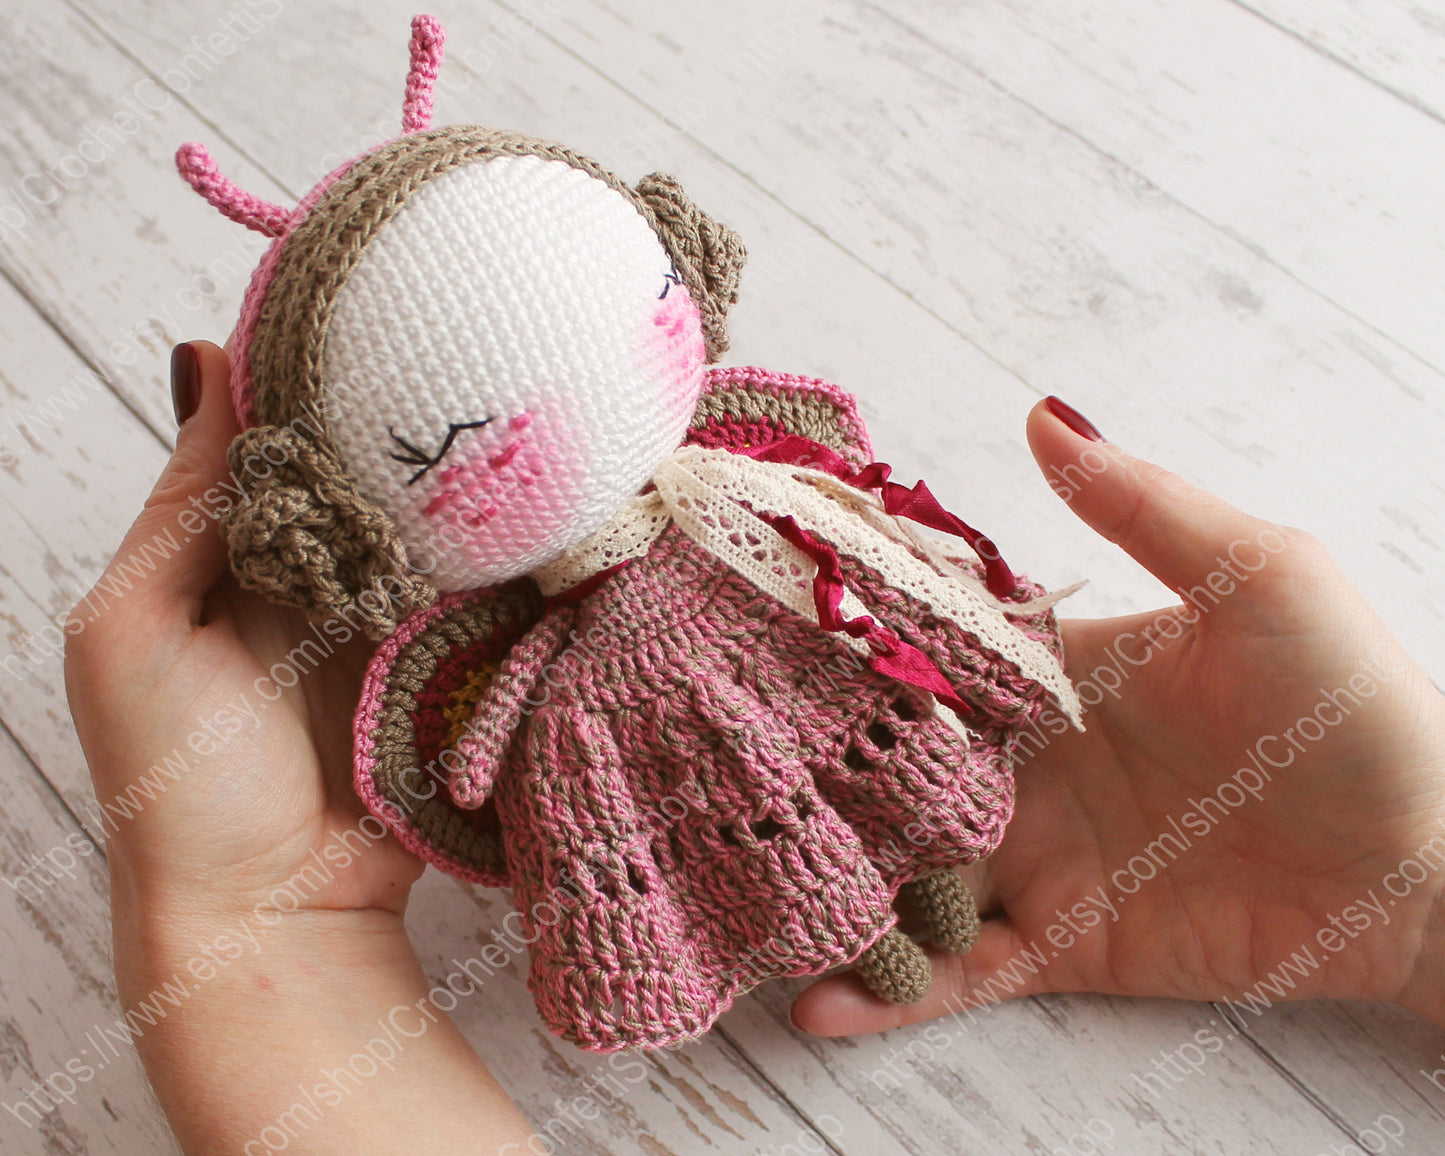 PDF PATTERN Crochet Doll, Amigurumi Butterfly, DIY Doll, Stuffed Toy 20 cm / 7.8", Crochet Gift Idea